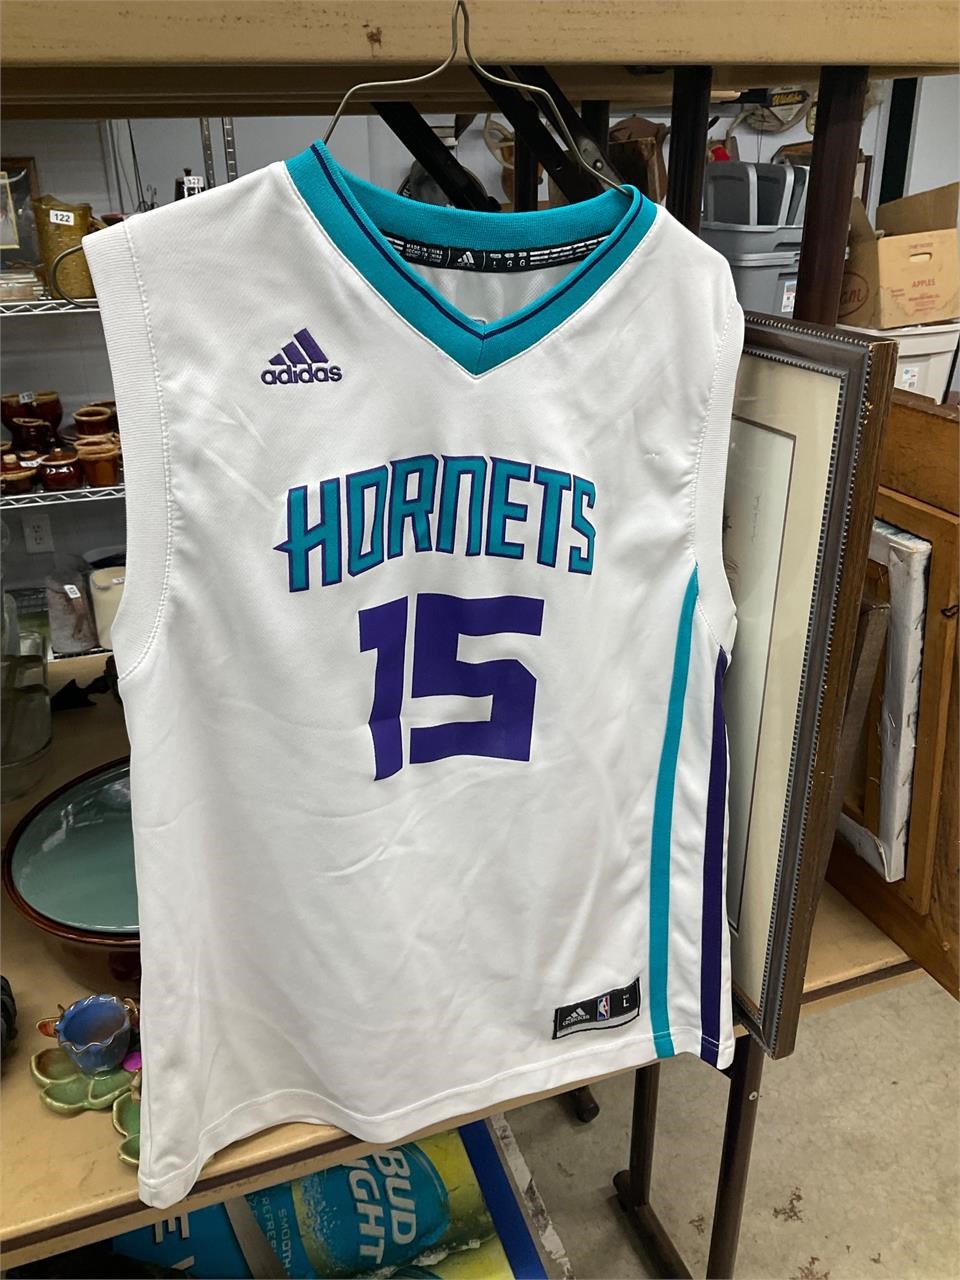 Hornets jersey